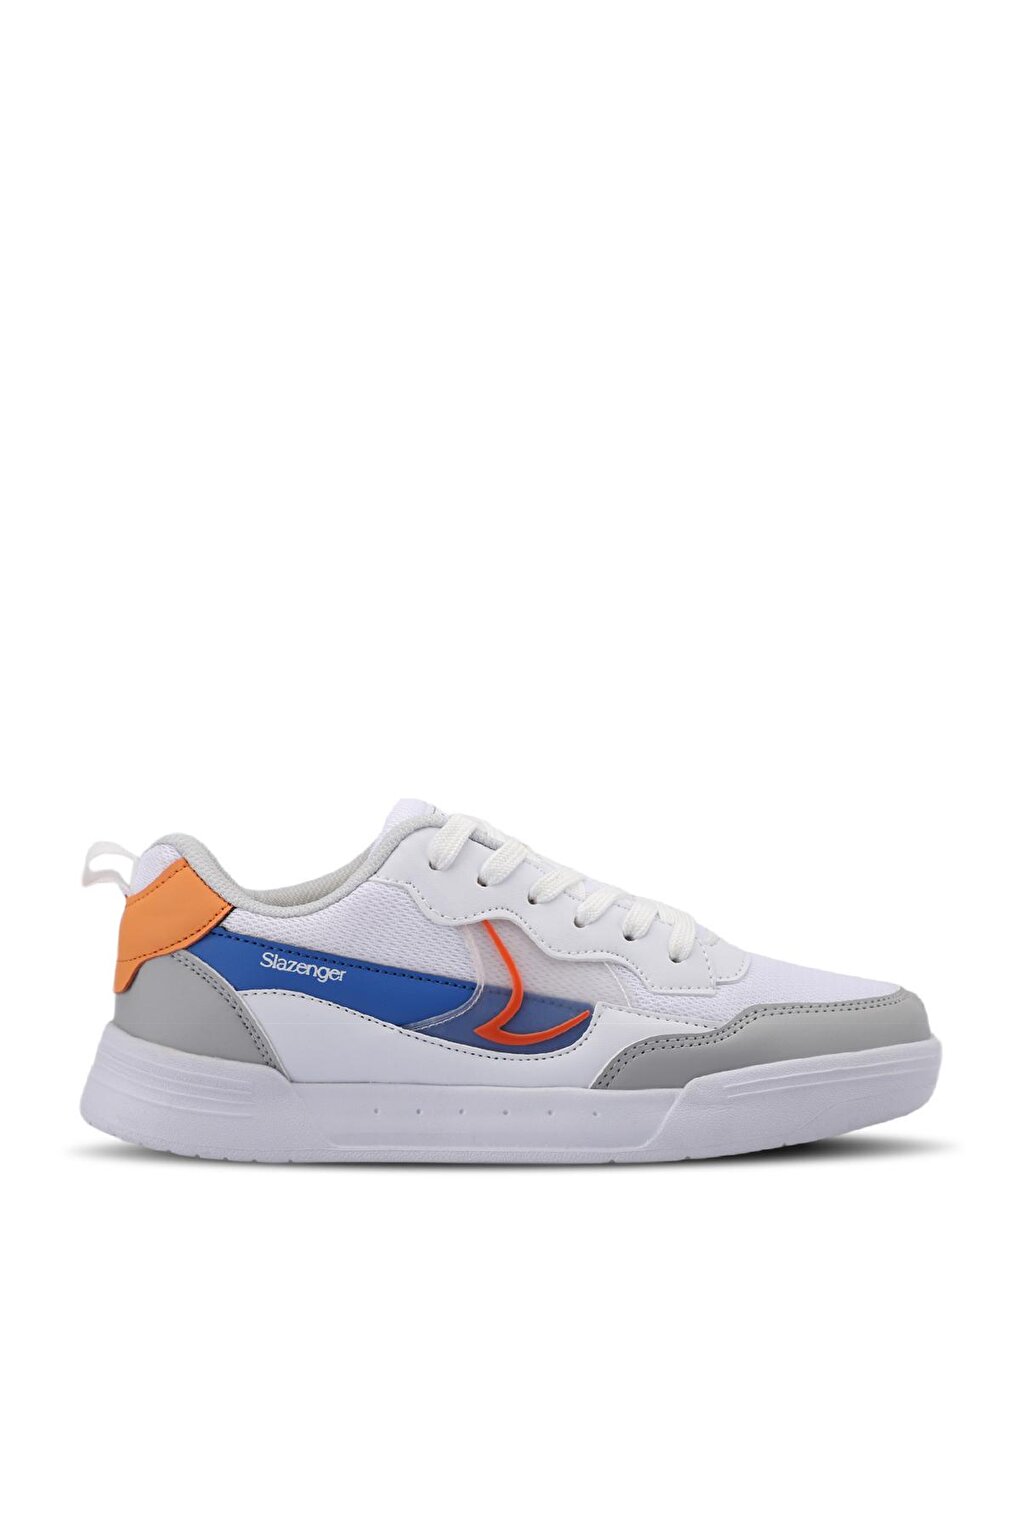 цена BARBRO Sneaker Женская обувь Белый/Оранжевый SLAZENGER